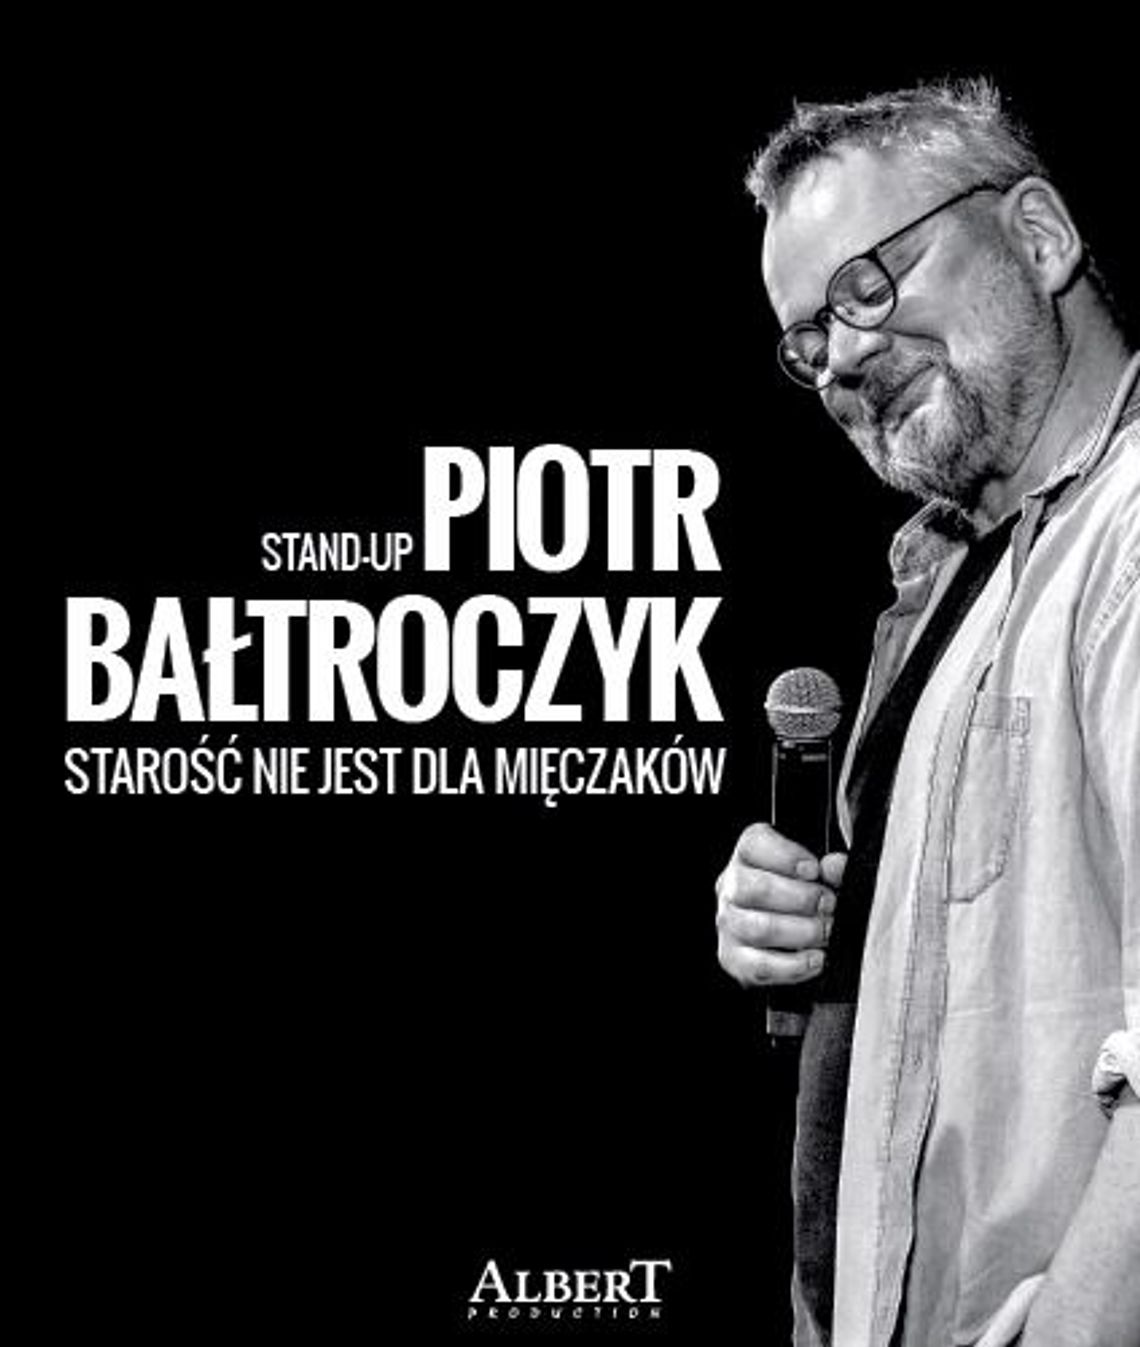 Stand Up: Piotr Bałtroczyk „Starość nie jest dla mięczaków” PRZENIESIONY